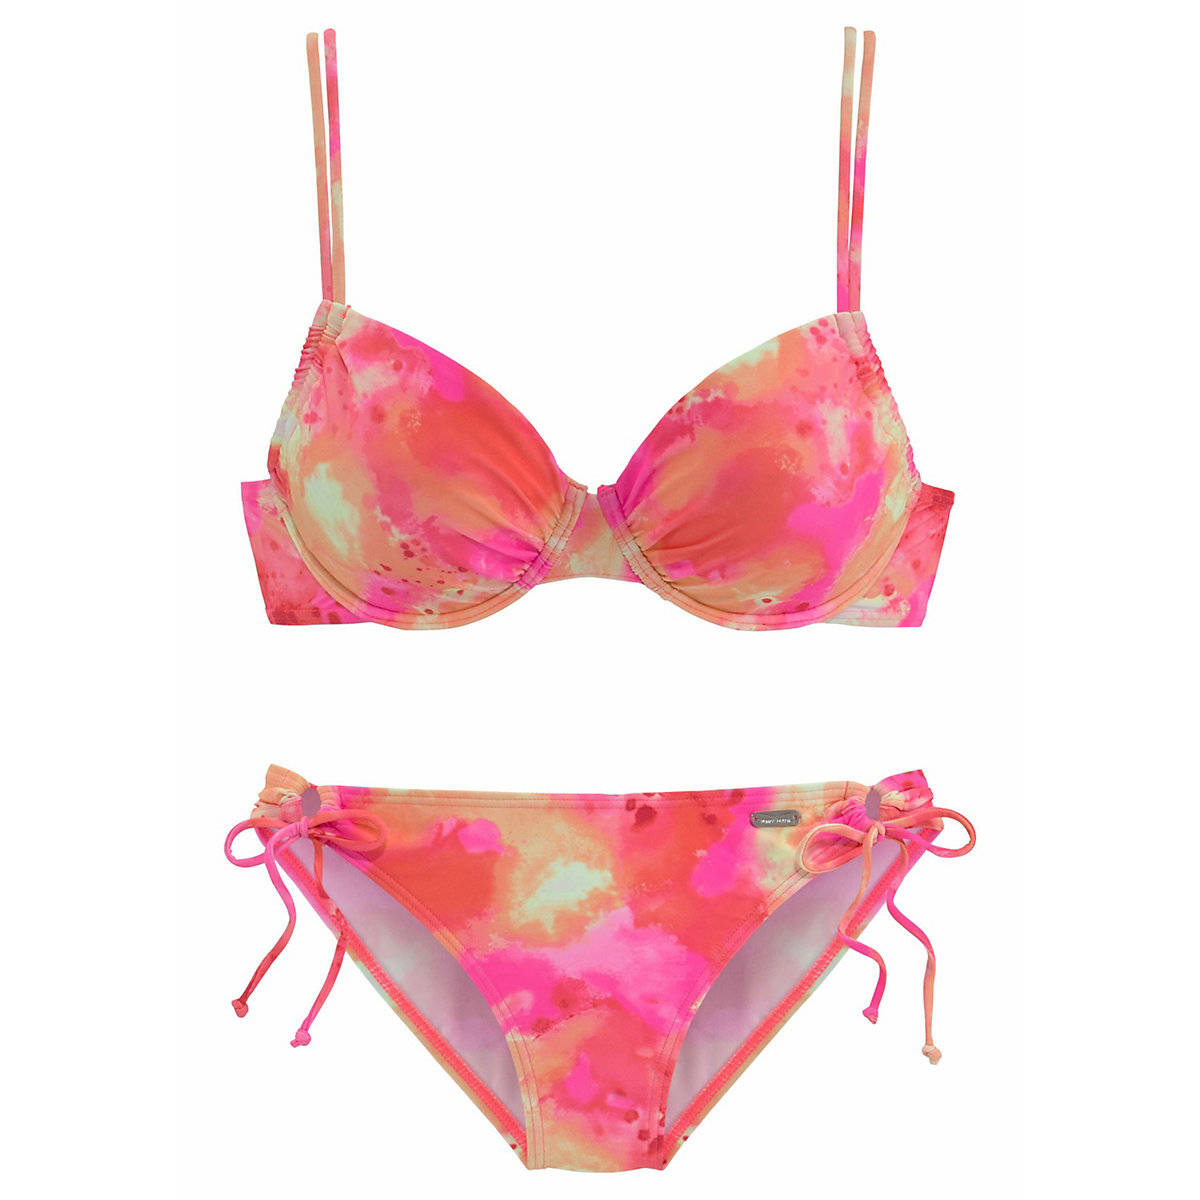 Venice Beach Bügel-Bikini pink